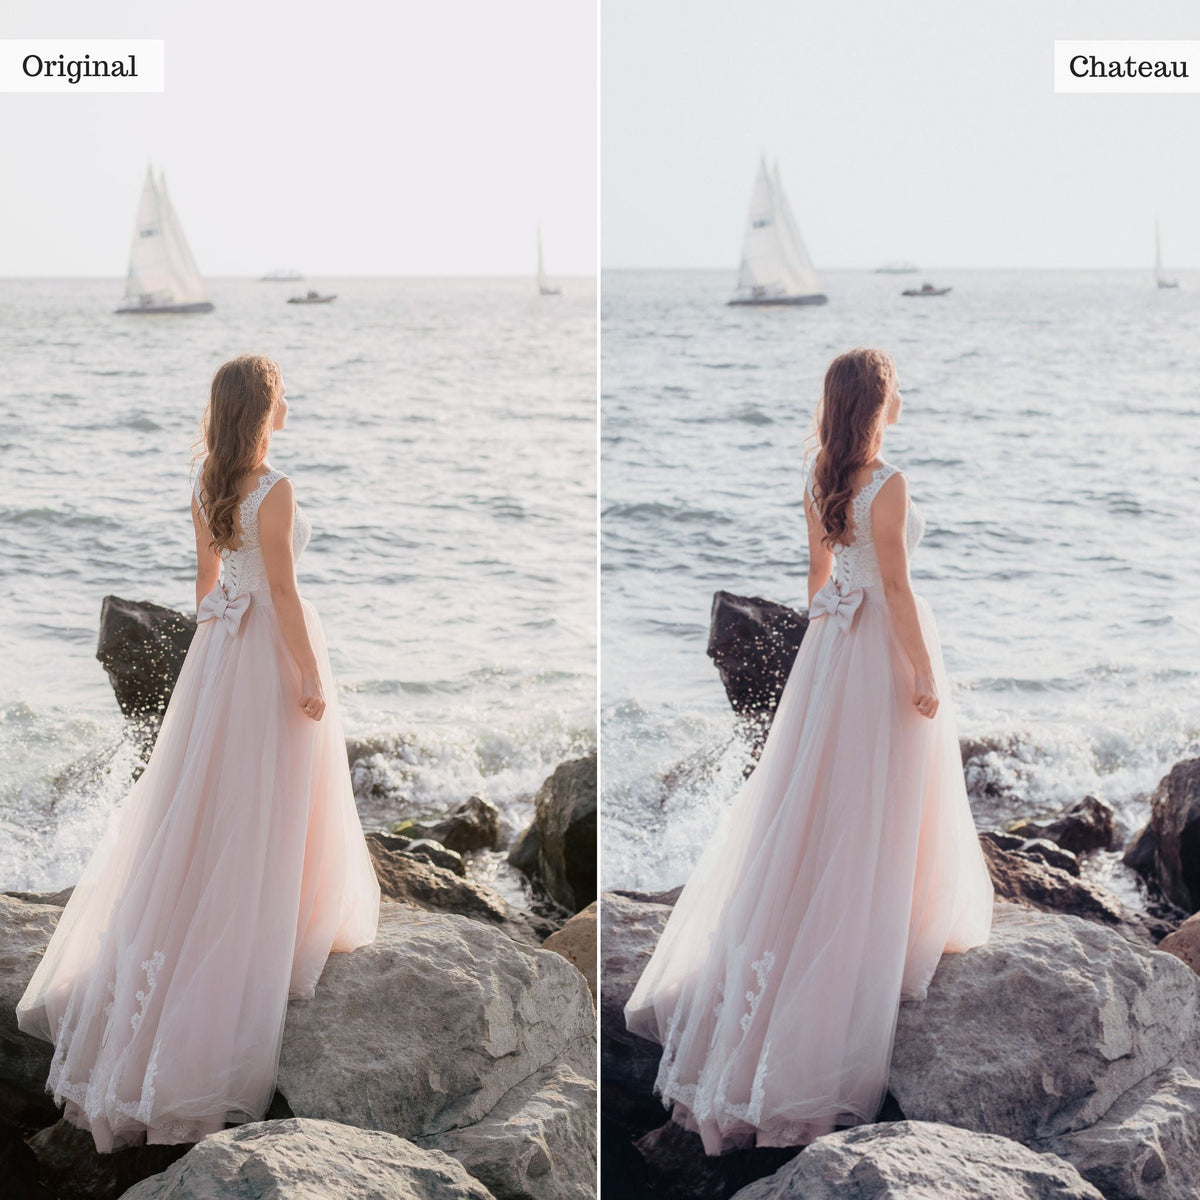 Chateau - Single Color Palette Presets for Lightroom Mobile &amp; Desktop